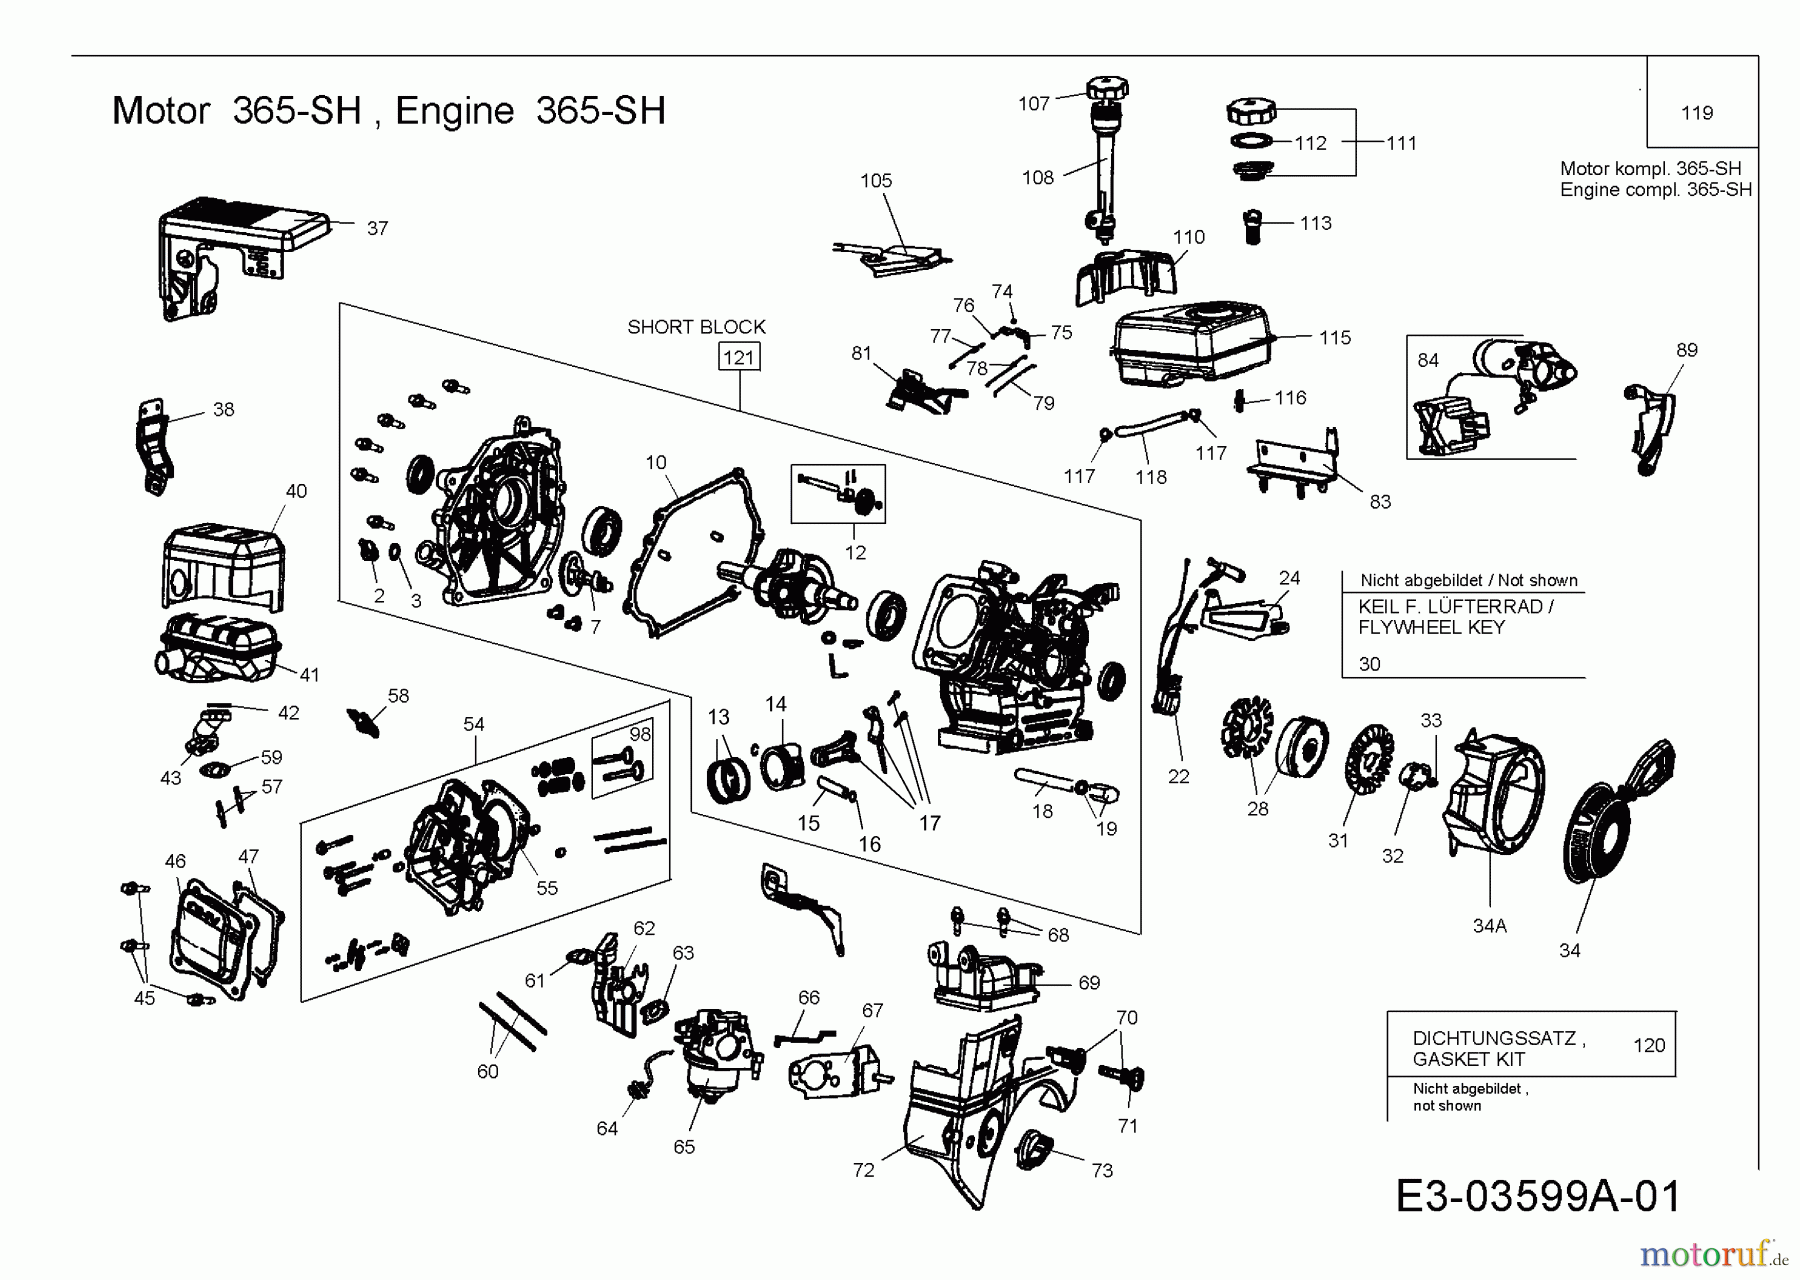  MTD-Engines Horizontal 365-SH 752Z365-SH  (2007) Engine